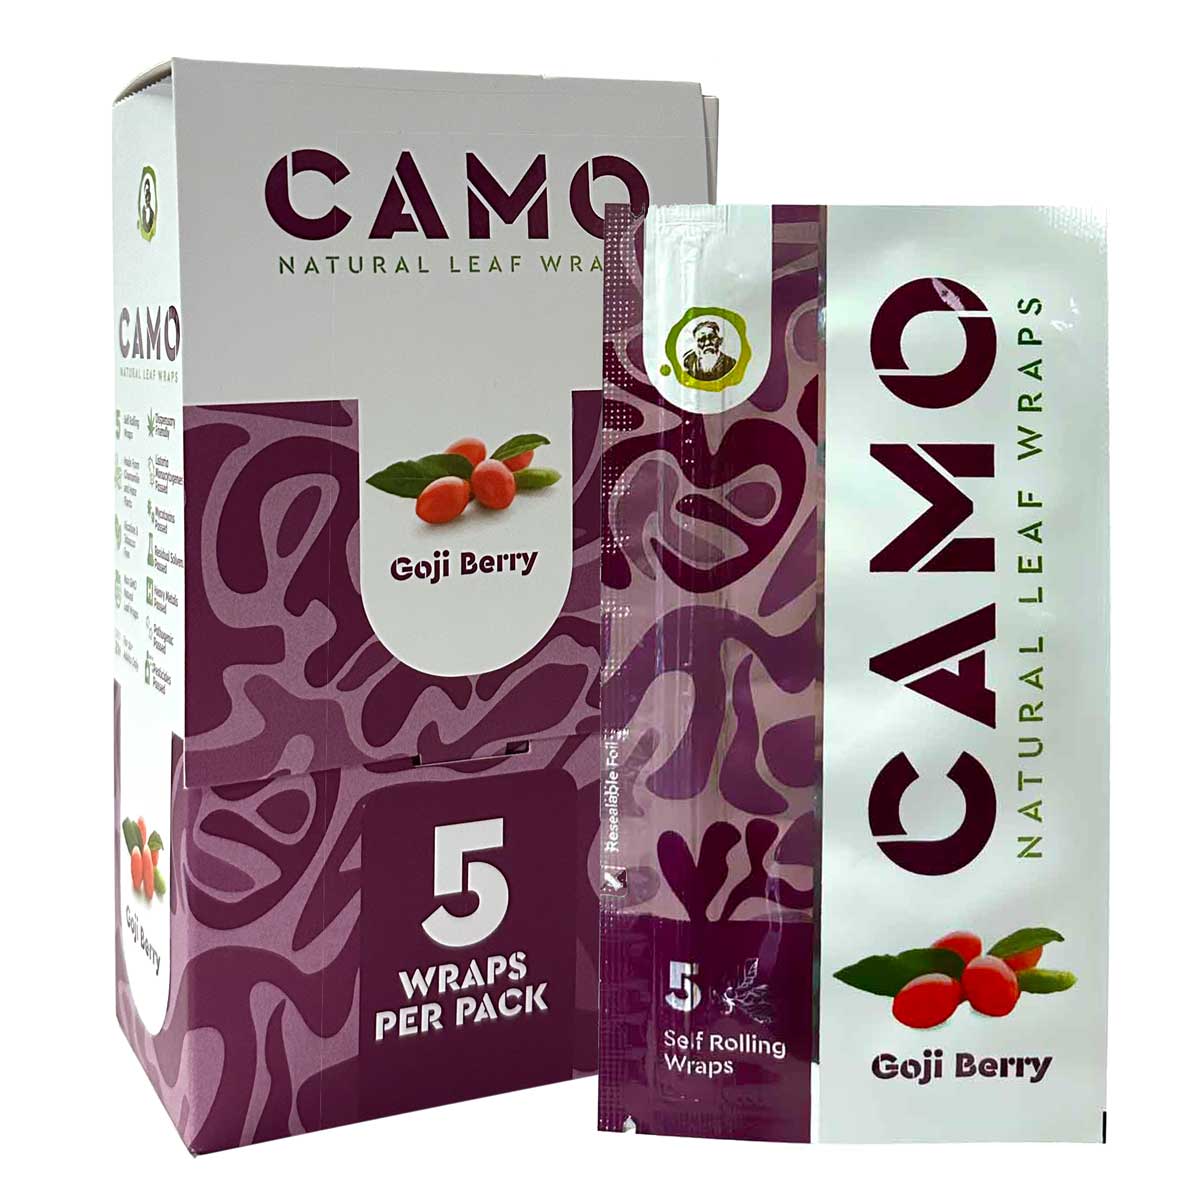 Camo Natural Leaf Wraps ~ Goji Berry Flavor